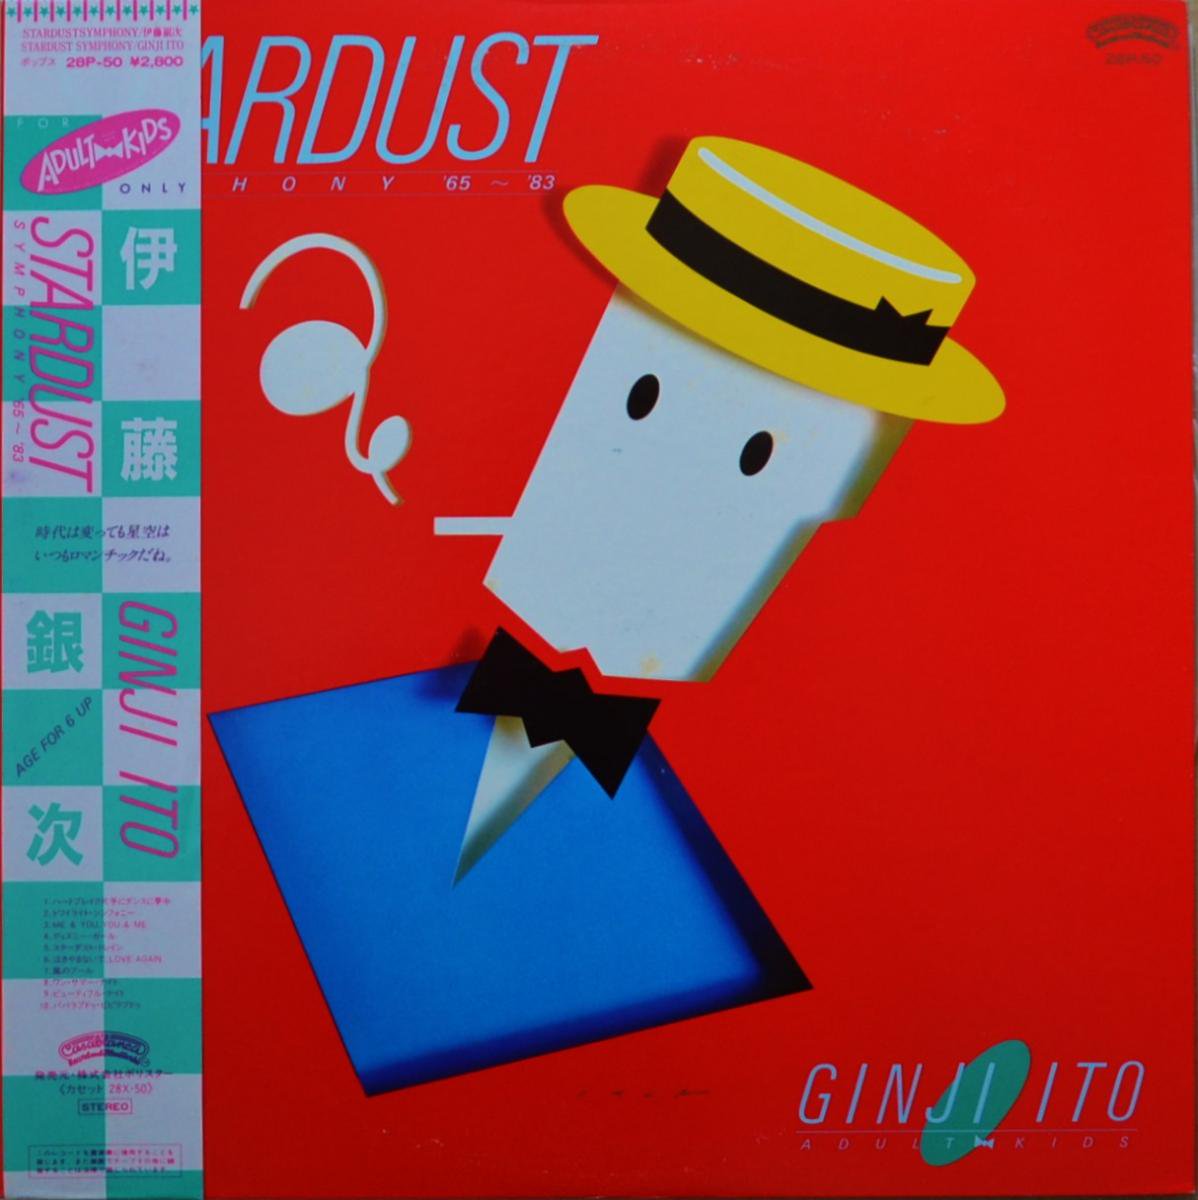 伊藤銀次 GINJI ITO / STARDUST SYMPHONY ’65-’83 (LP)